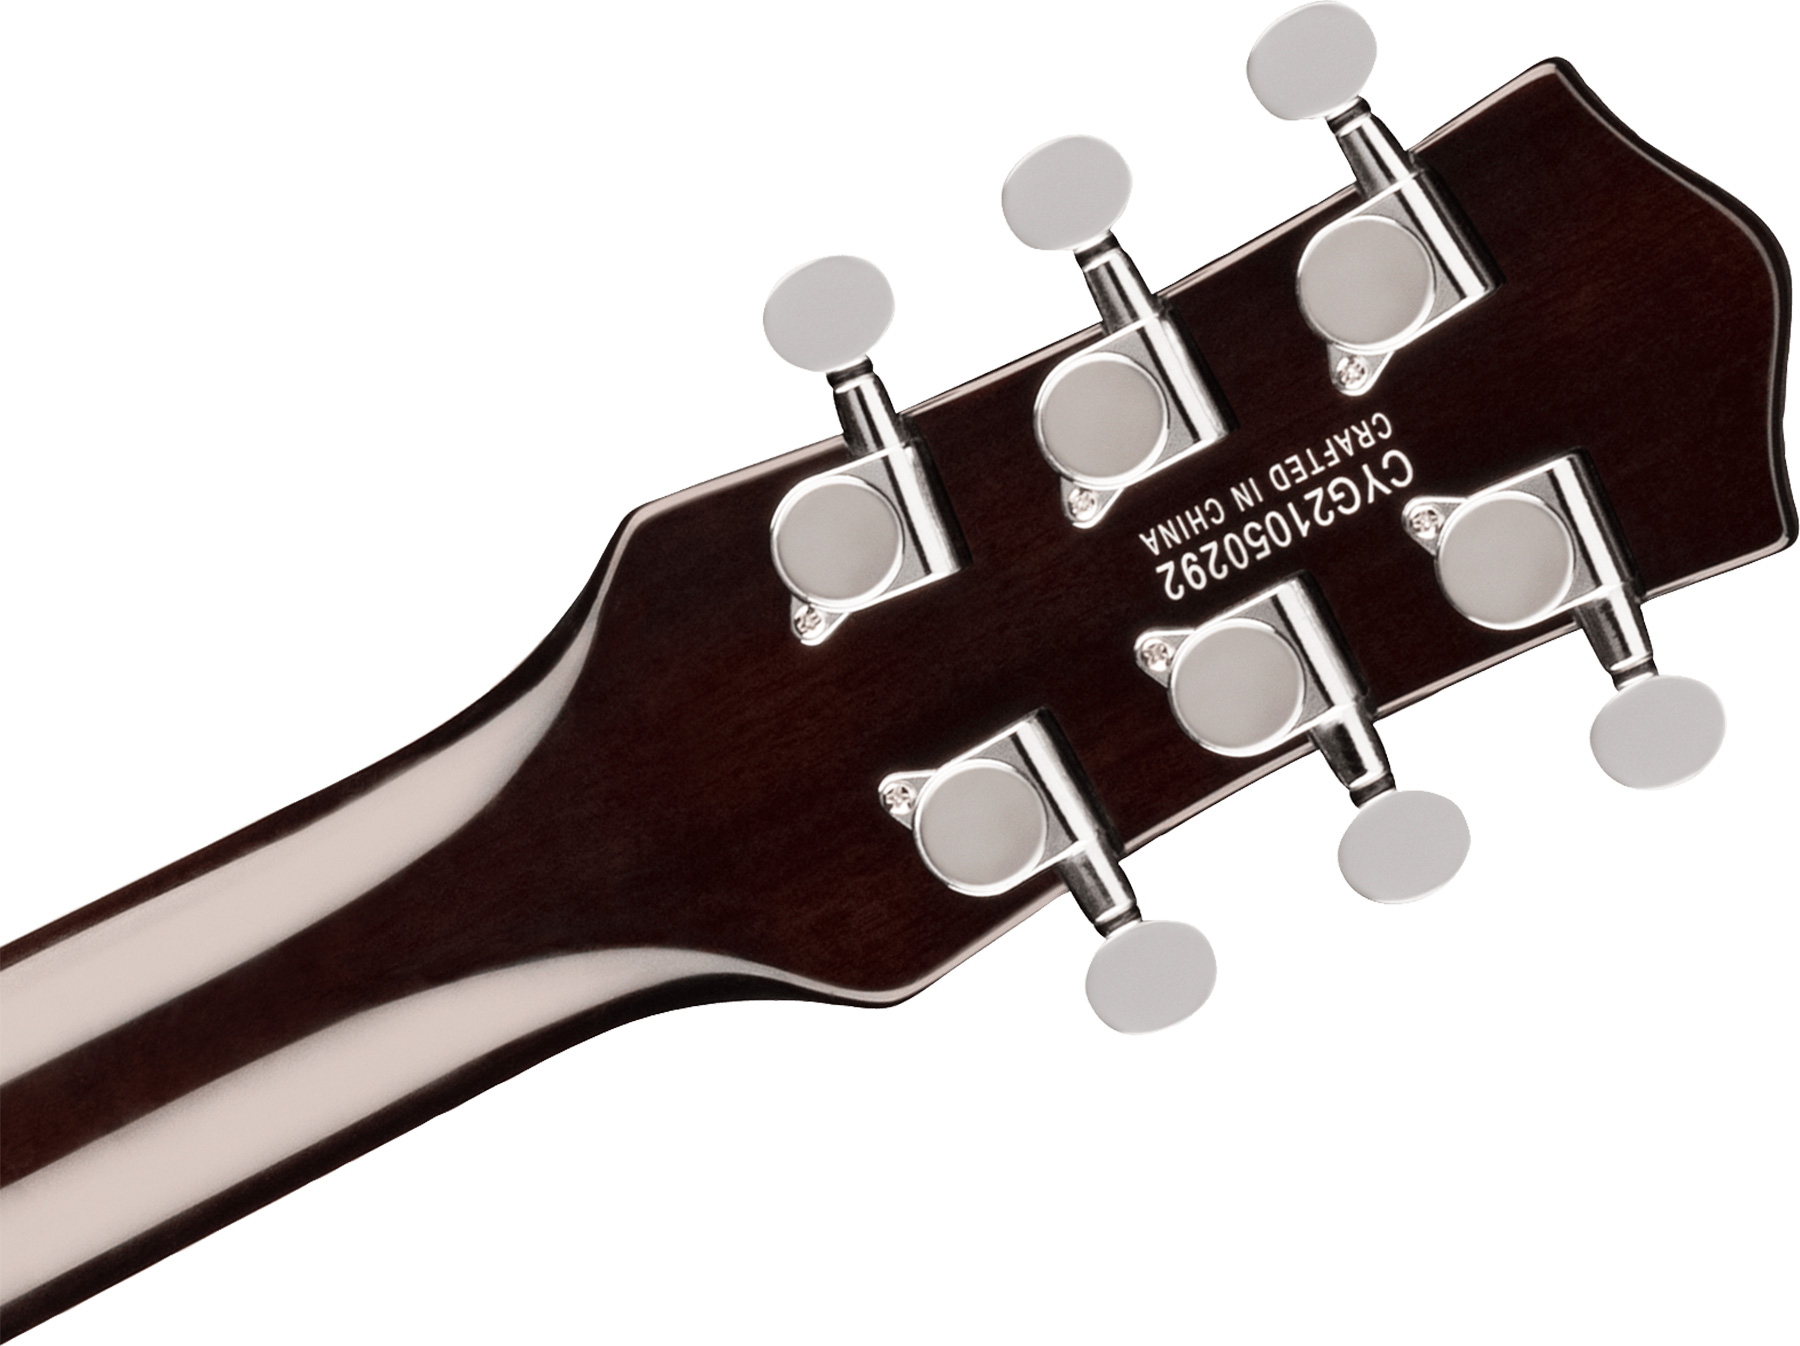 Gretsch G5220lh Jet Bt Singlecut V-stoptail Electromatic Gaucher Hh Ht Lau - Jade Grey Metallic - E-Gitarre für Linkshänder - Variation 3